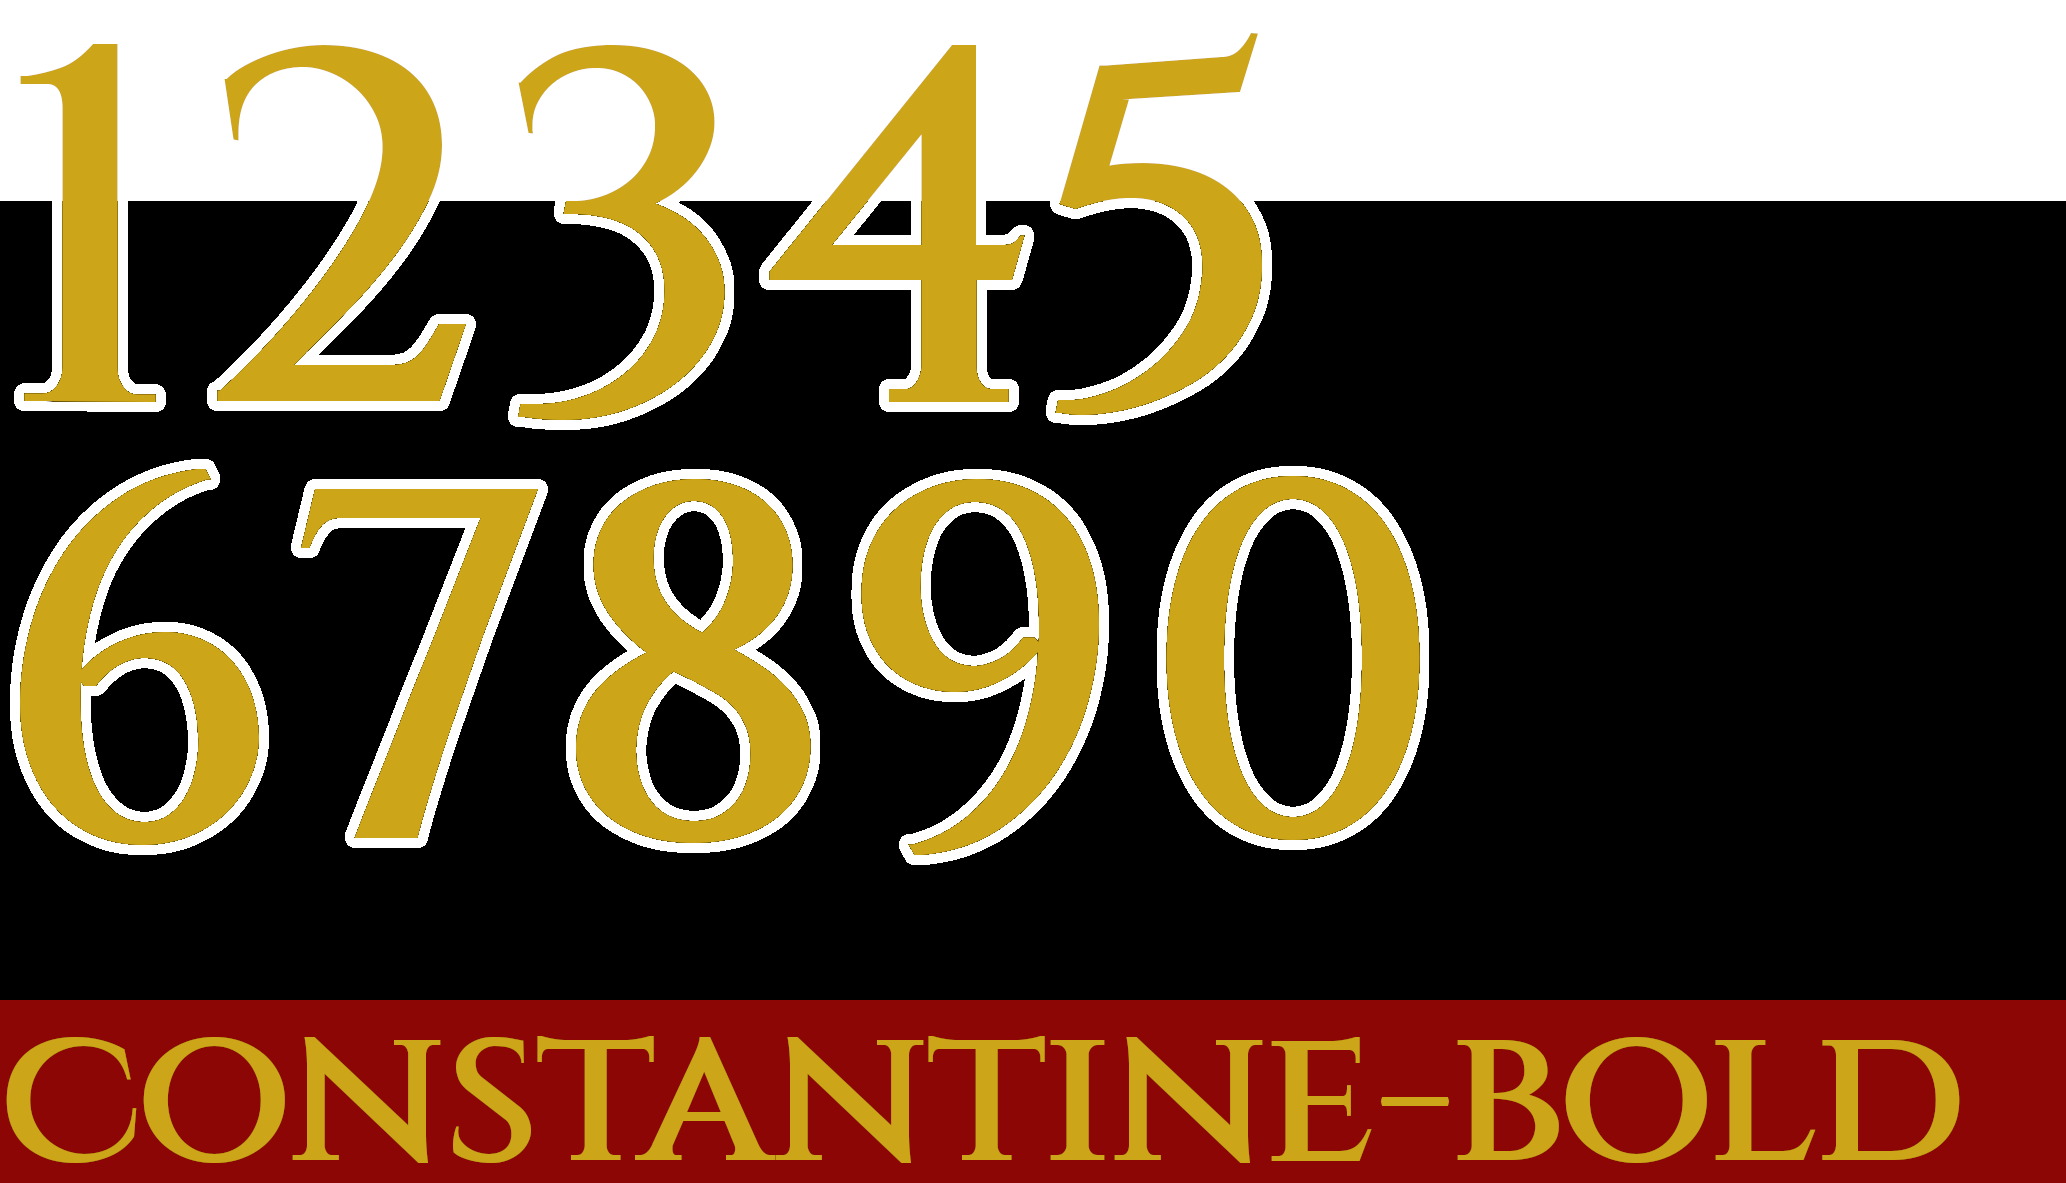 Constantine-Bold number set.png